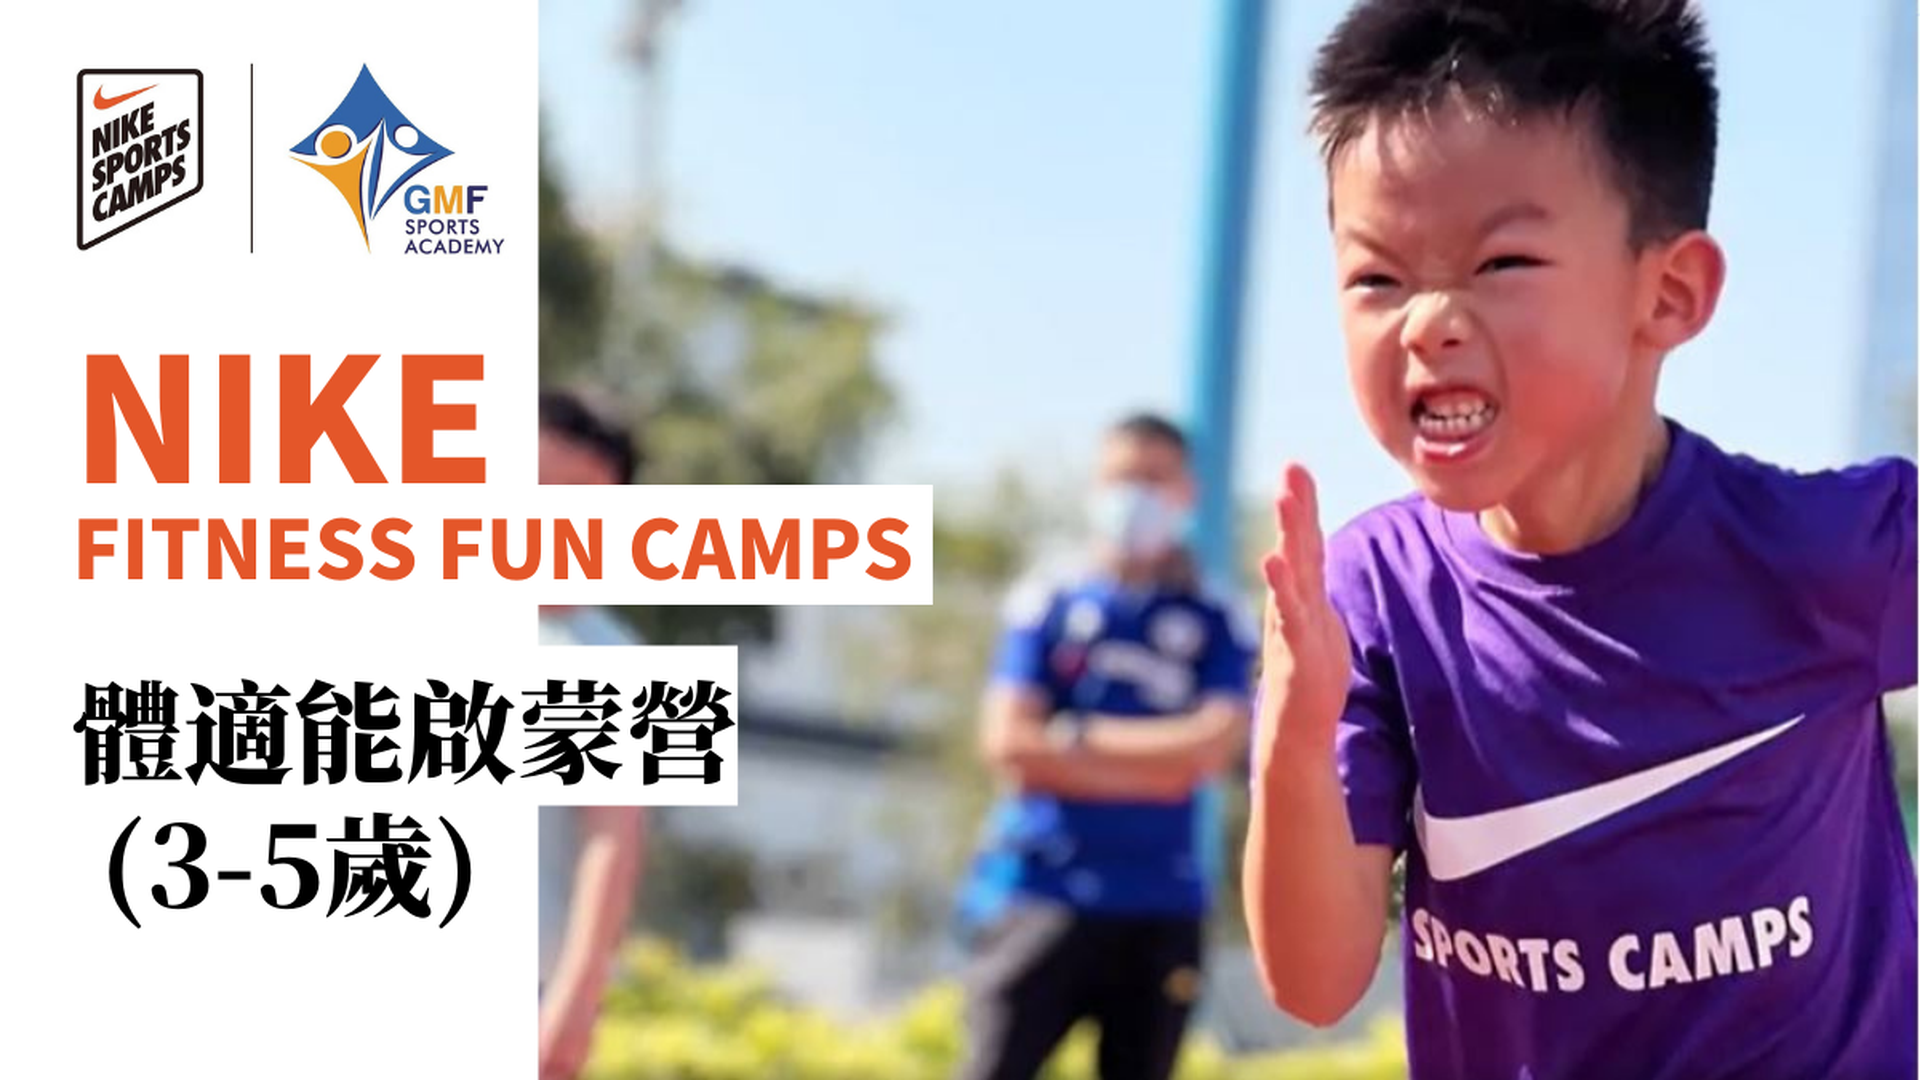 Nike Fitness Fun Camps NIKE 體適能啟蒙營 (3-5歲)